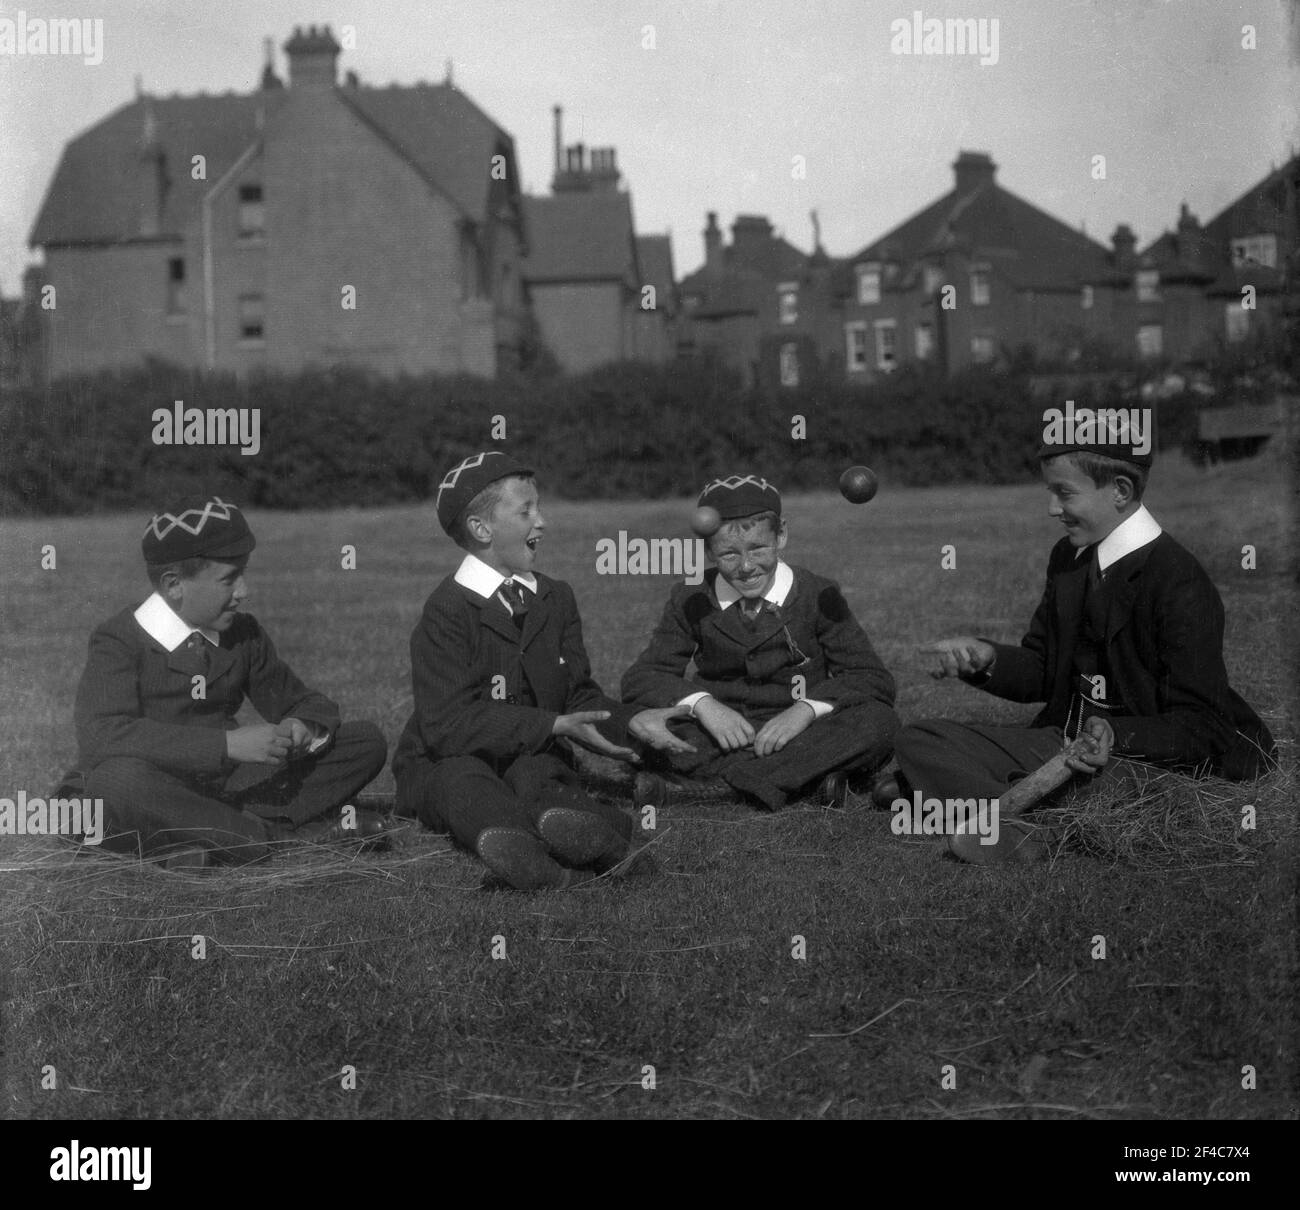 1930s, historisch, sitzen zusammen auf einem Feld draußen, vier englische öffentliche Schuljungen in ihrer traditionellen Uniform und Kappen, spielen "fangen" mit einem Cricket-Ball, England, Großbritannien. Stockfoto